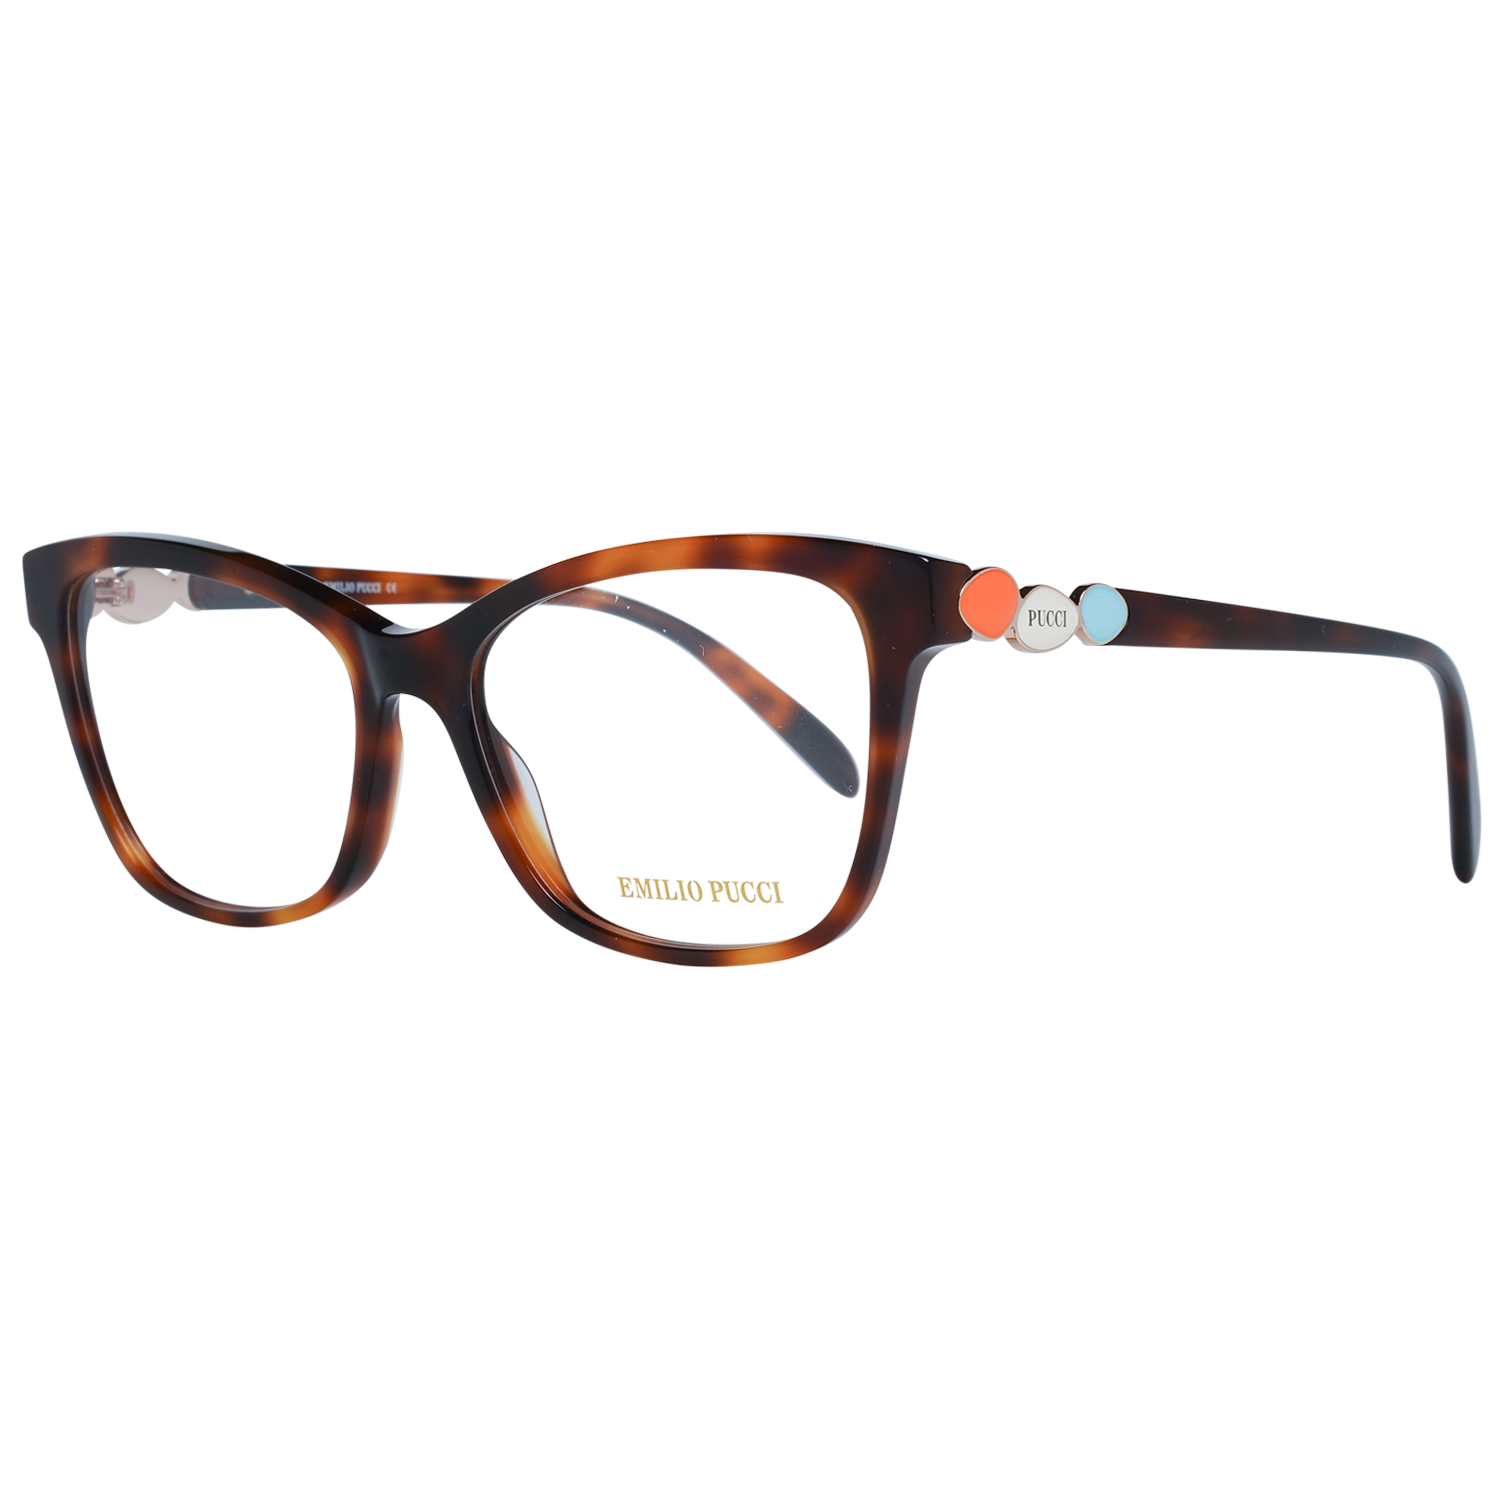 Emilio Pucci Frames Emilio Pucci Optical Frame EP5150 052 54 Eyeglasses Eyewear UK USA Australia 